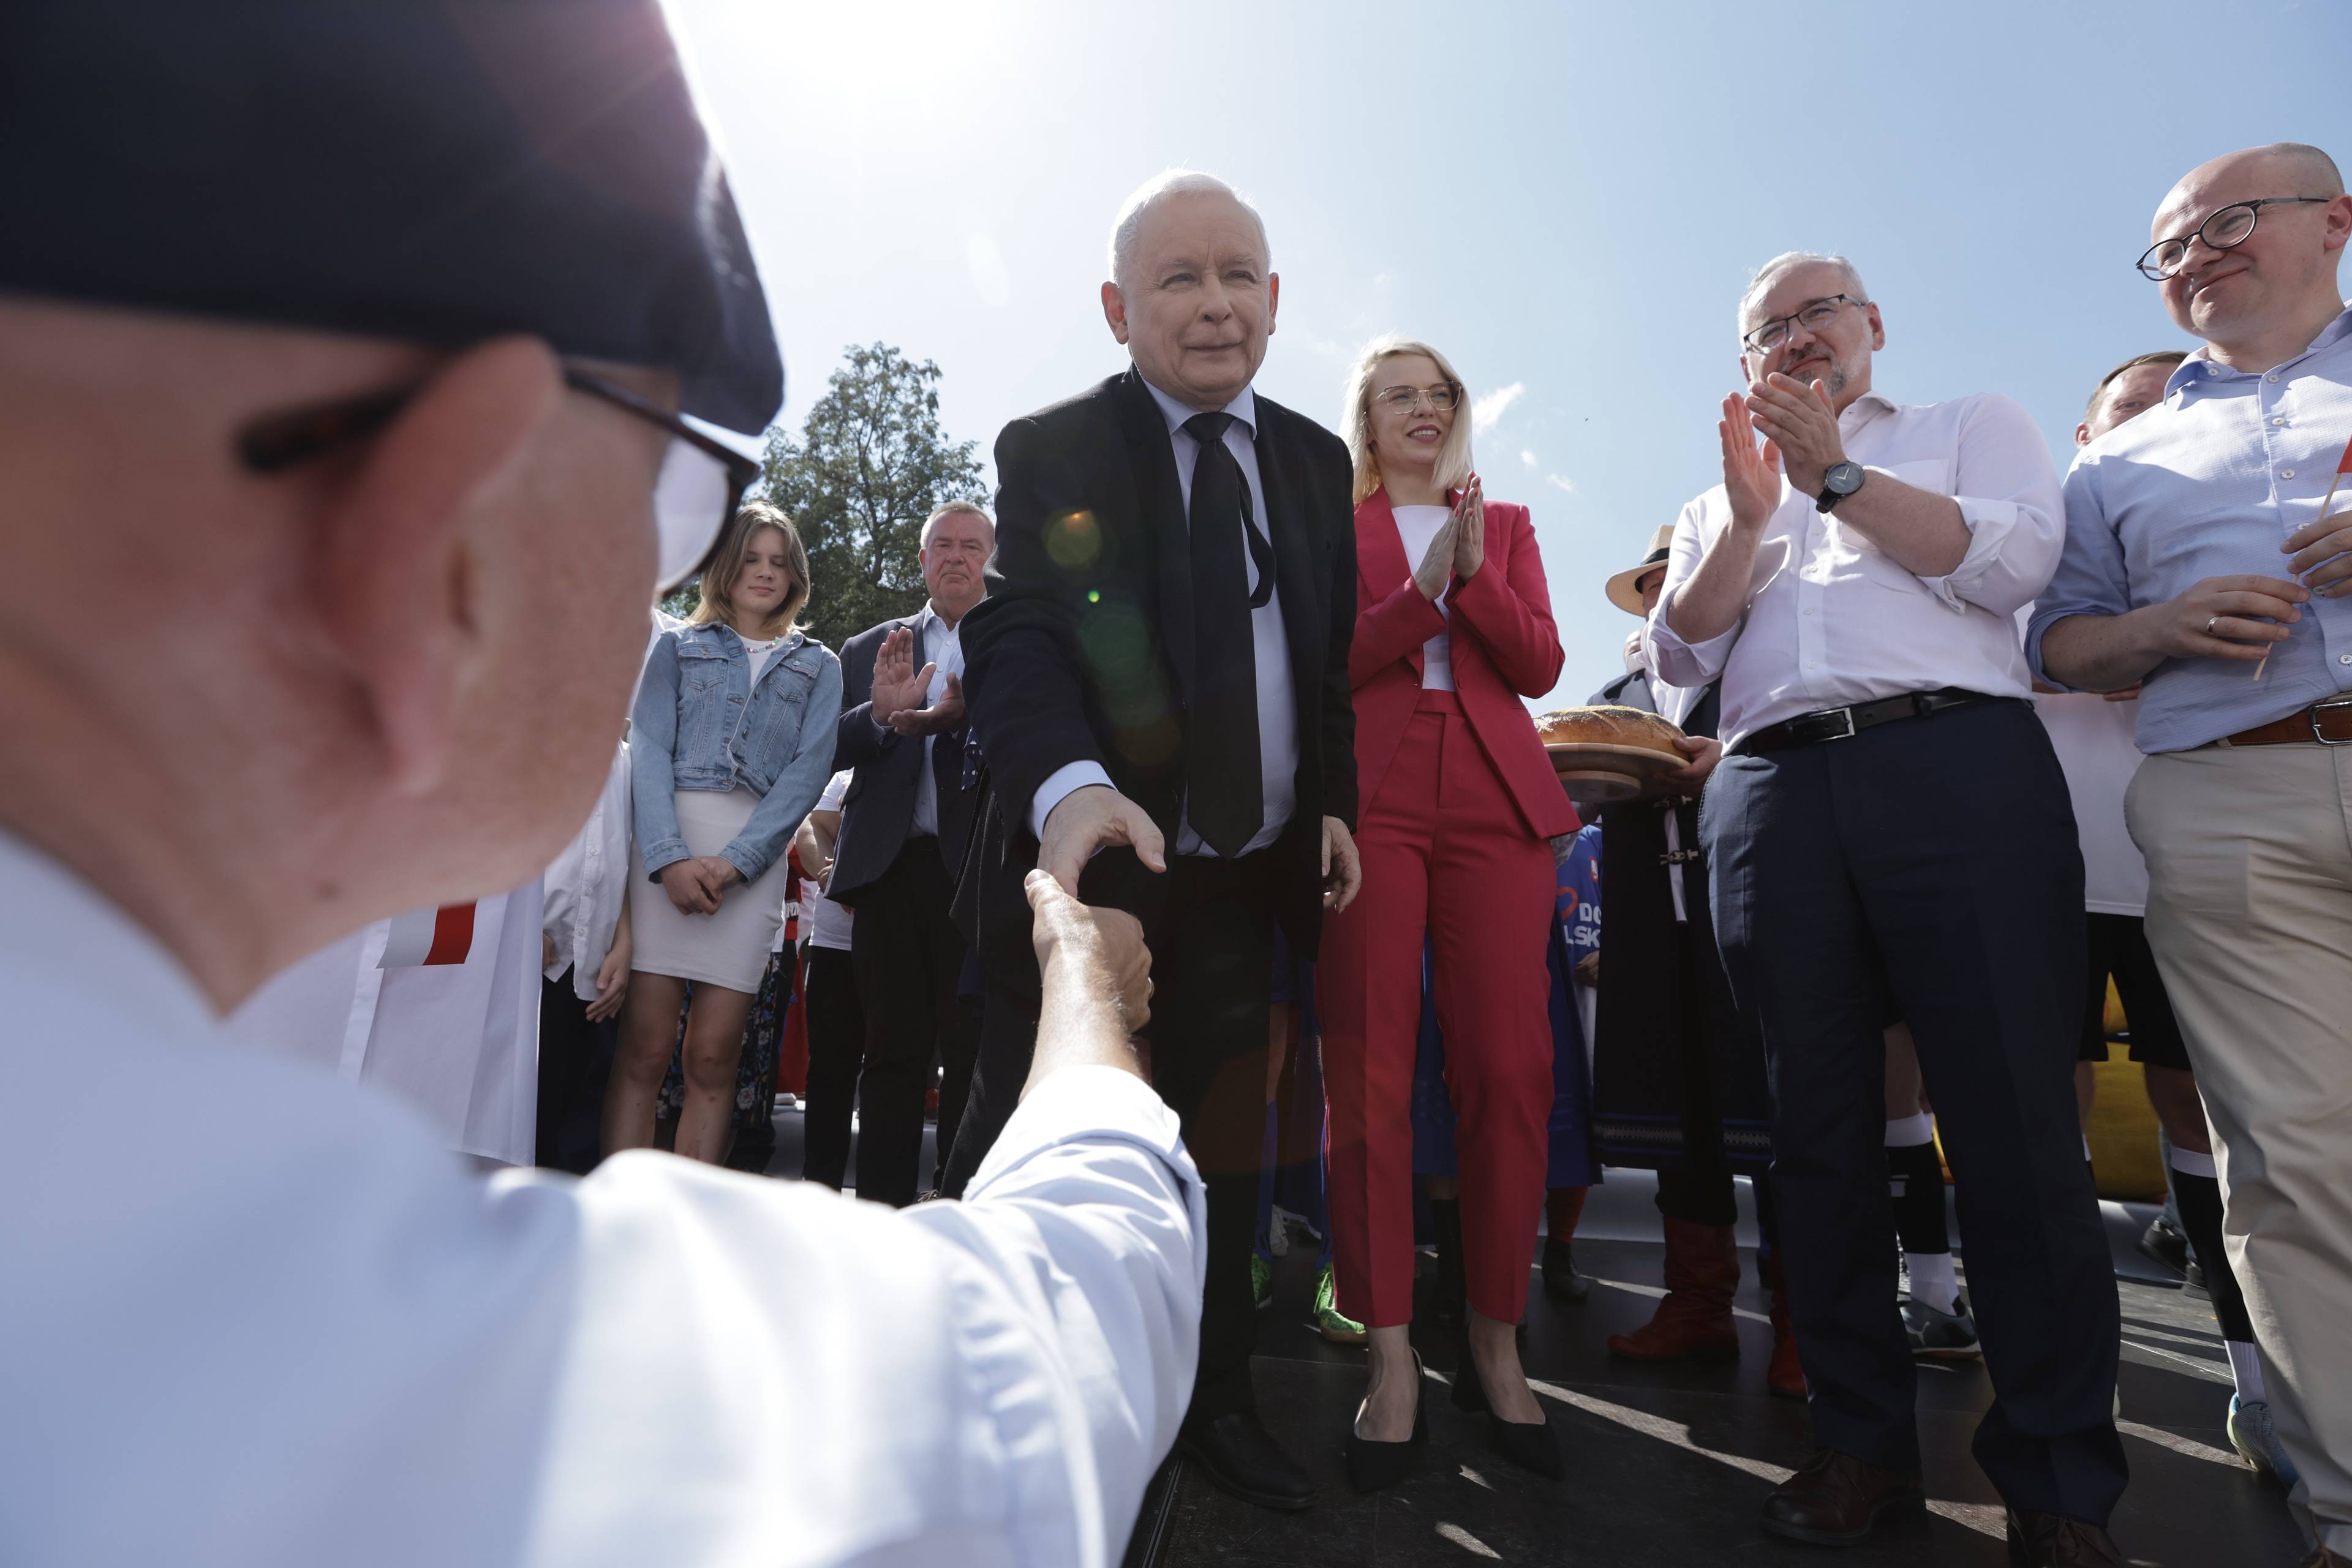 Dwóch starszych mężczyzn podaje sobie rękę, jeden w kaszkiecie i białej koszuli na pierwszym planie, drugi w czarnym garniturze i krawacie (to Jarosław Kaczyński, prezes PiS) na drugim planie